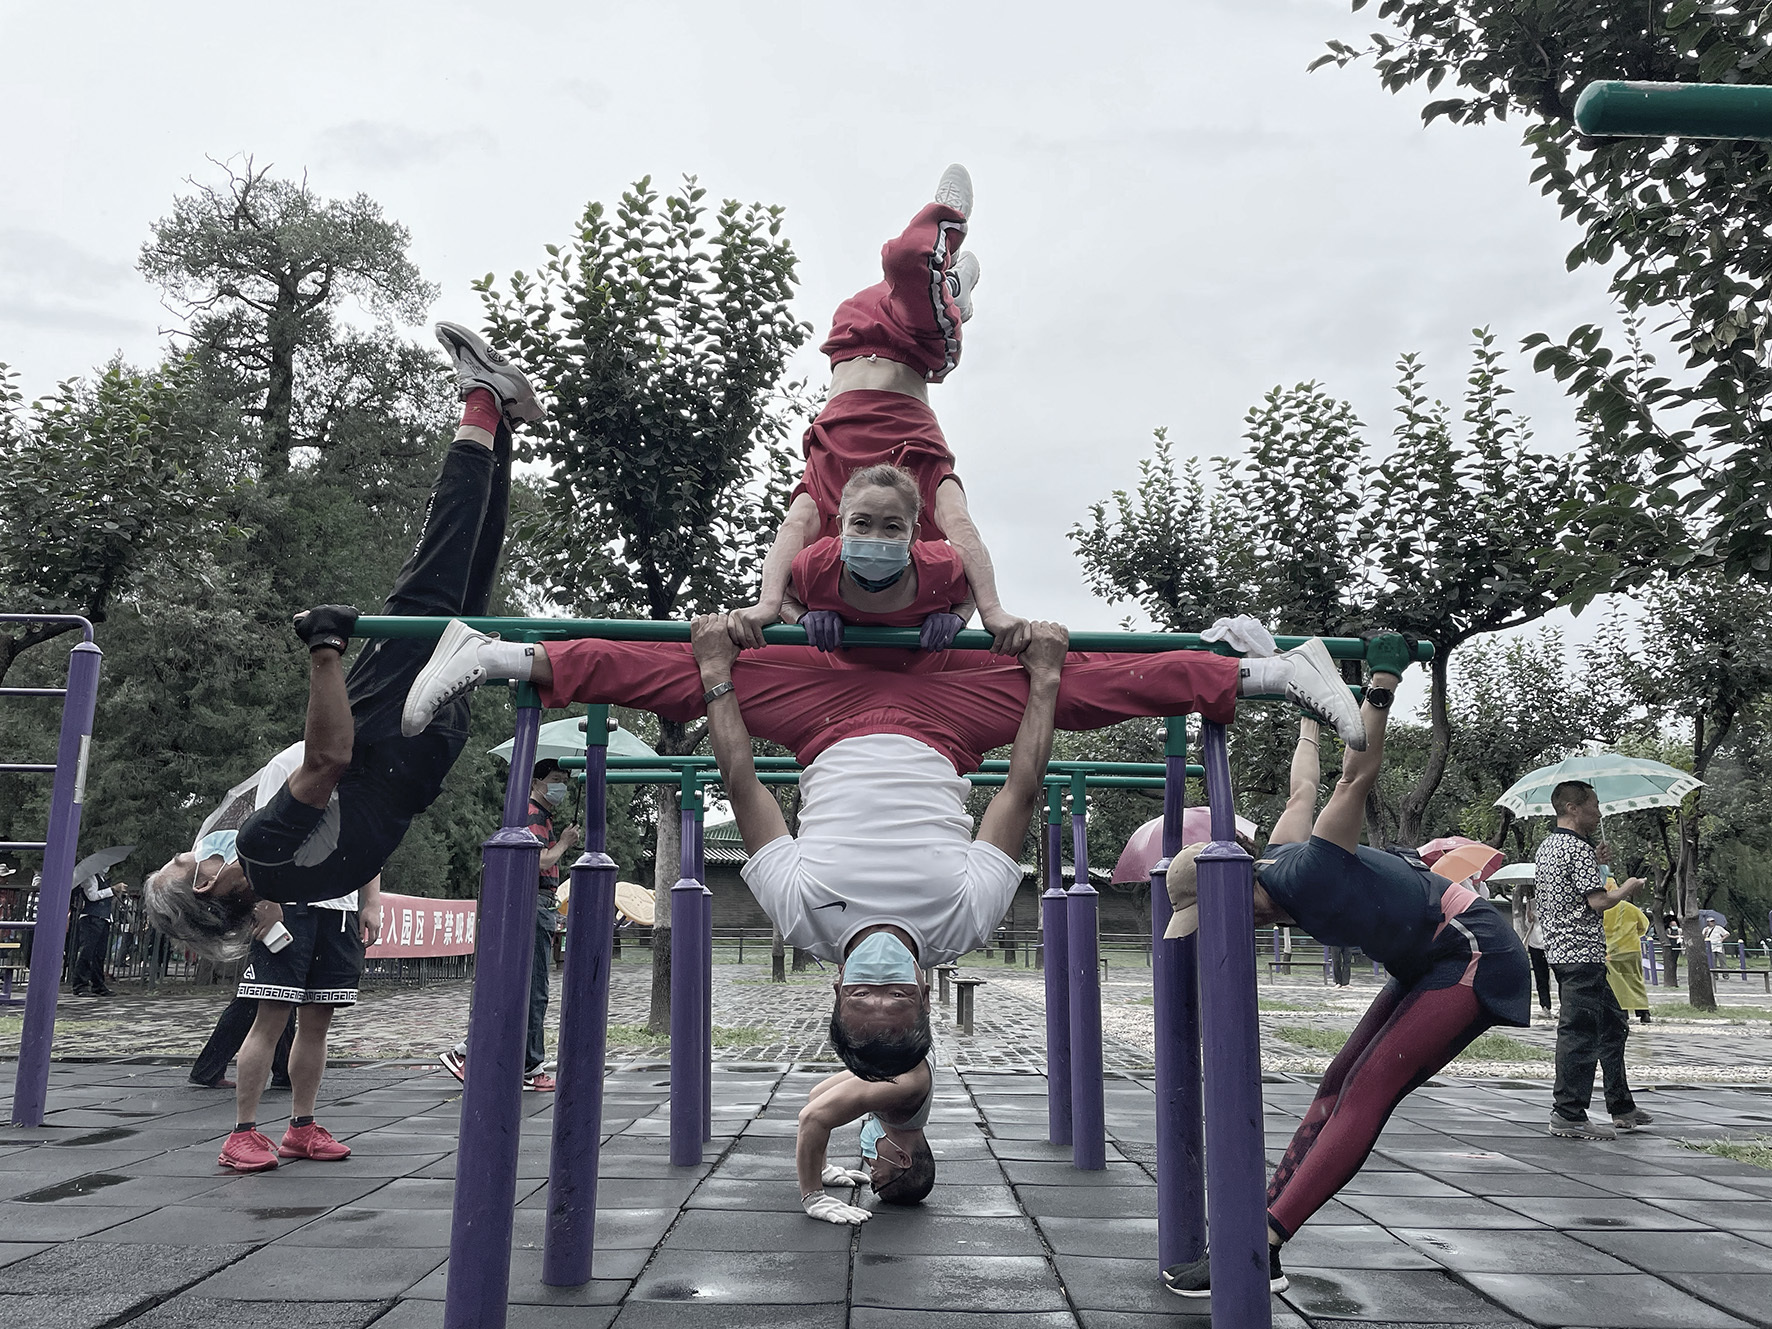 健身公园妇女 库存照片. 图片 包括有 亭亭玉立, 有吸引力的, 人们, 运行, 喜悦, 享用, 幸福, 健身 - 13849846